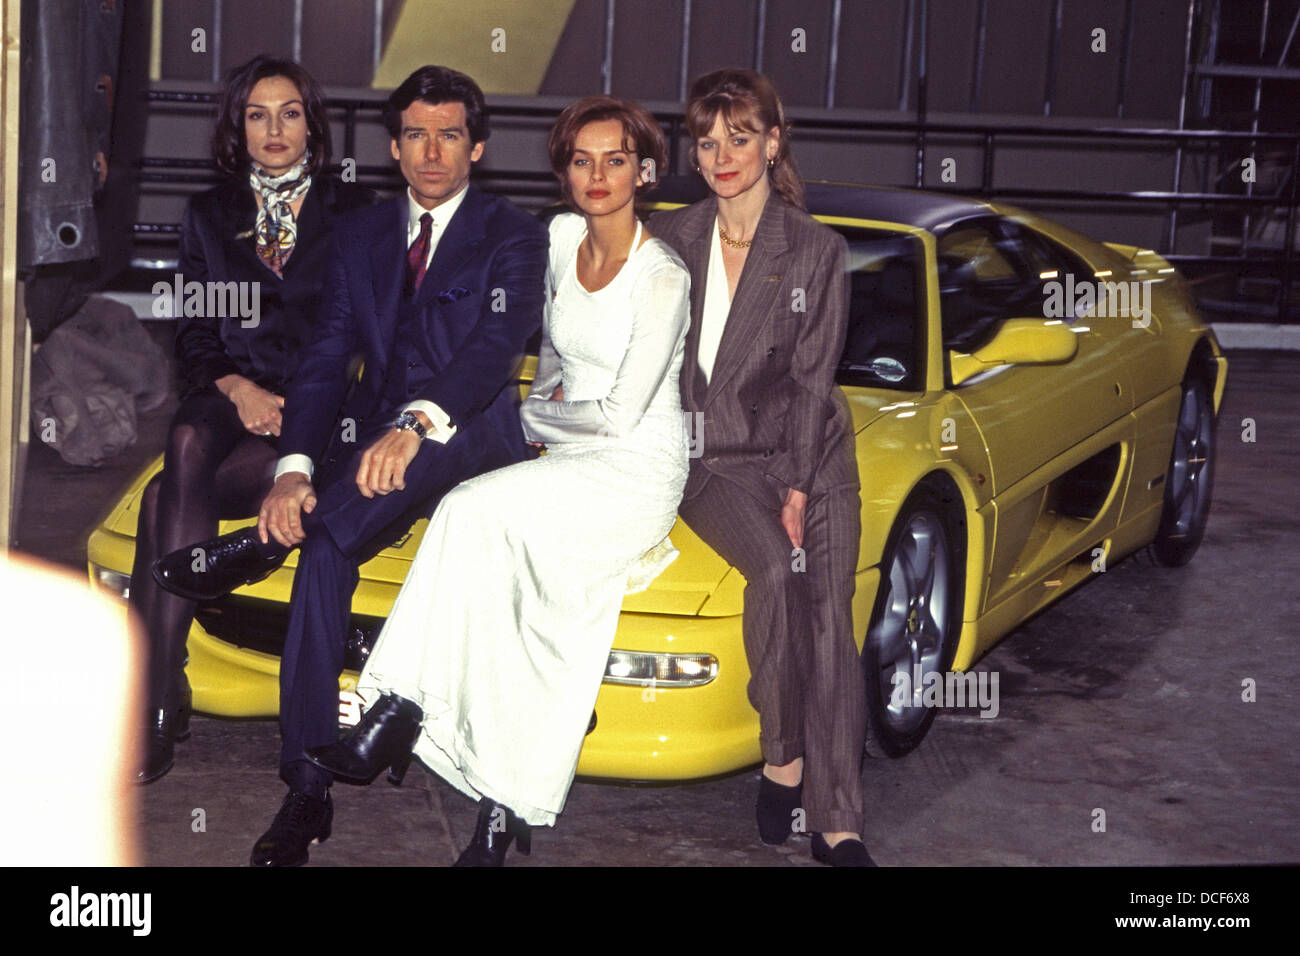 Goldeneye-Akteure Famke Janssen, Pierce Brosnan, Isabella Scorupco und Samantha Bond bei Goldeneye Präsentation Stockfoto